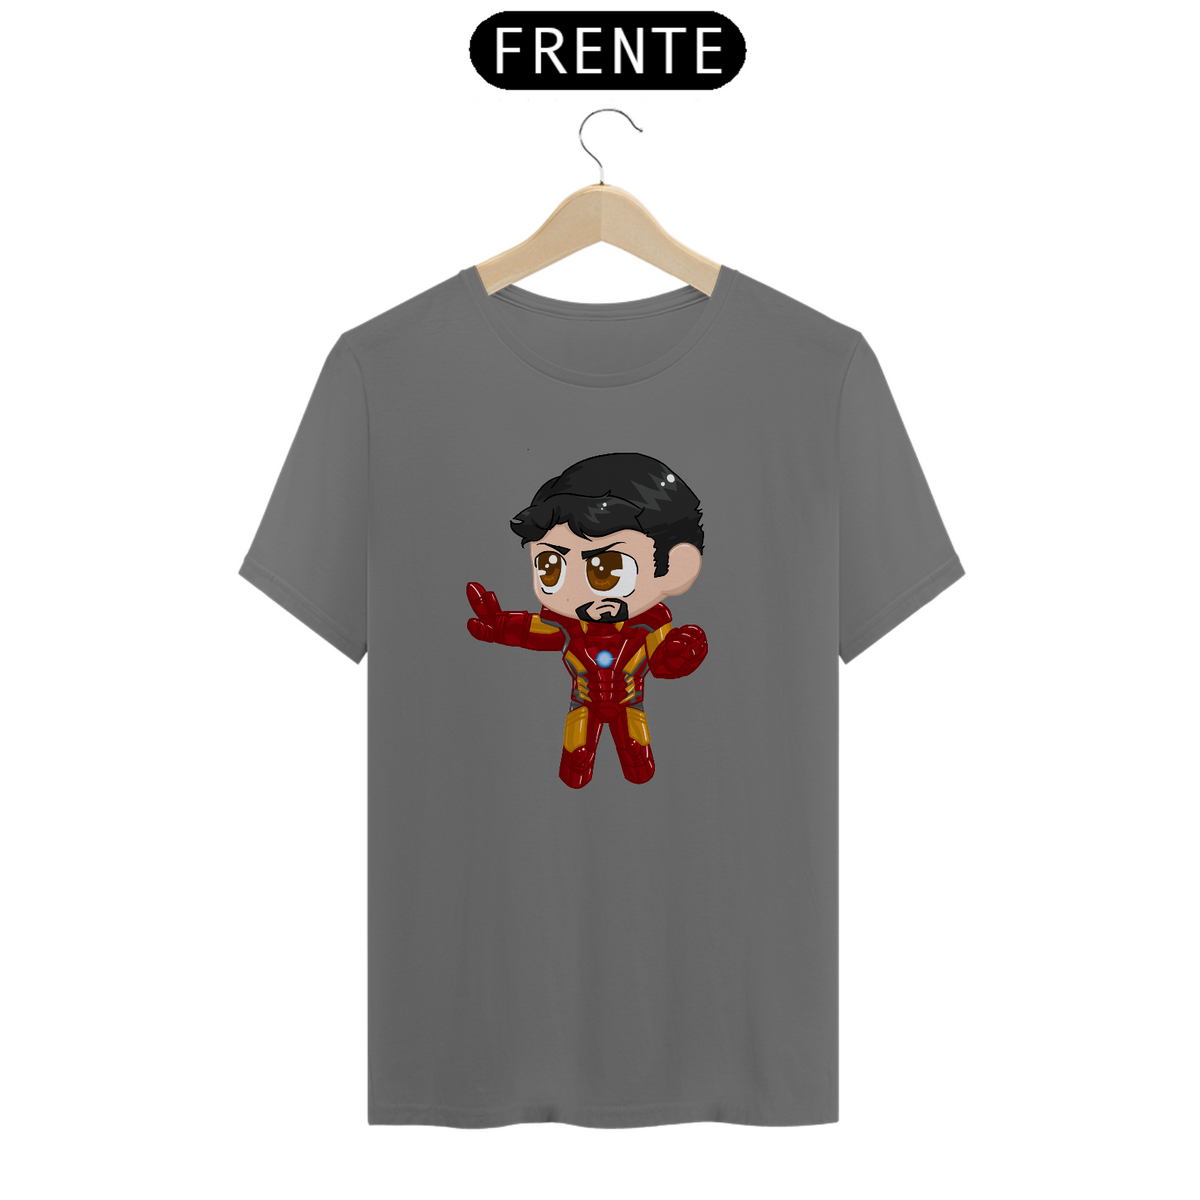 Nome do produto: Camiseta Cute Homem de Ferro